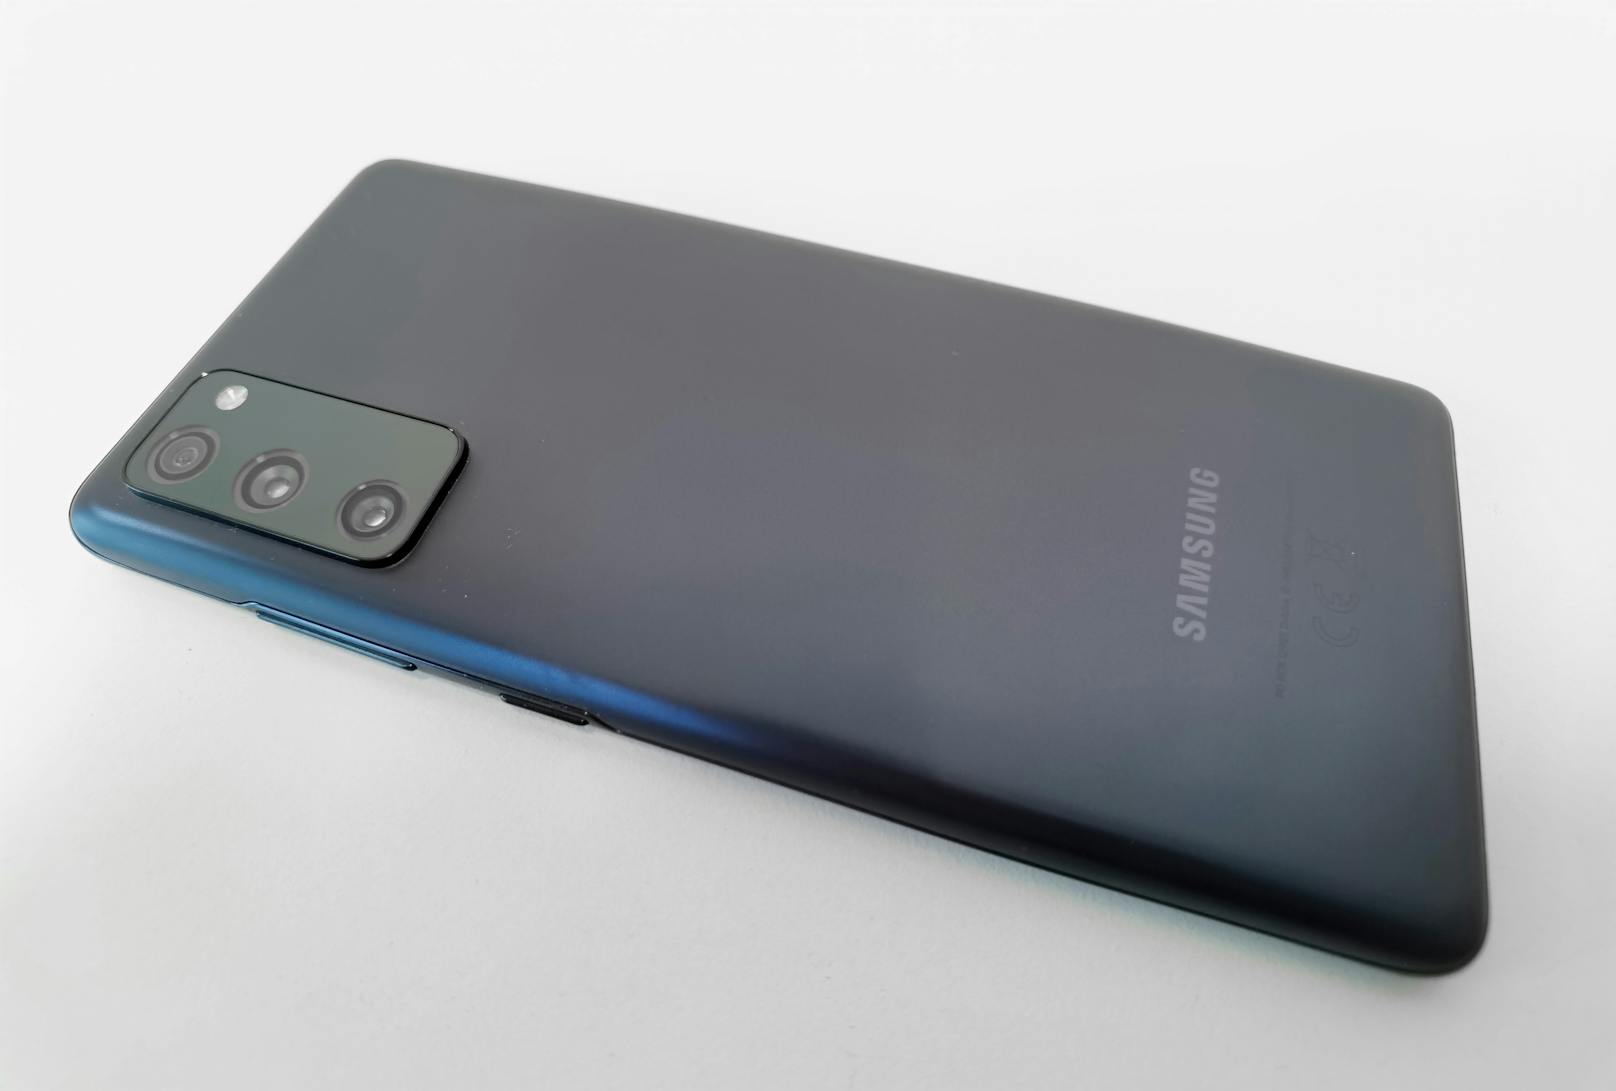 Farben, Technik, Leistung und Kamera machen das Samsung Galaxy S20 FE zu einem der spannendsten Smartphones des Jahres 2020, dem beim Preis-Leistungs-Verhältnis derzeit kein anderes Handy auch nur nahekommen kann.